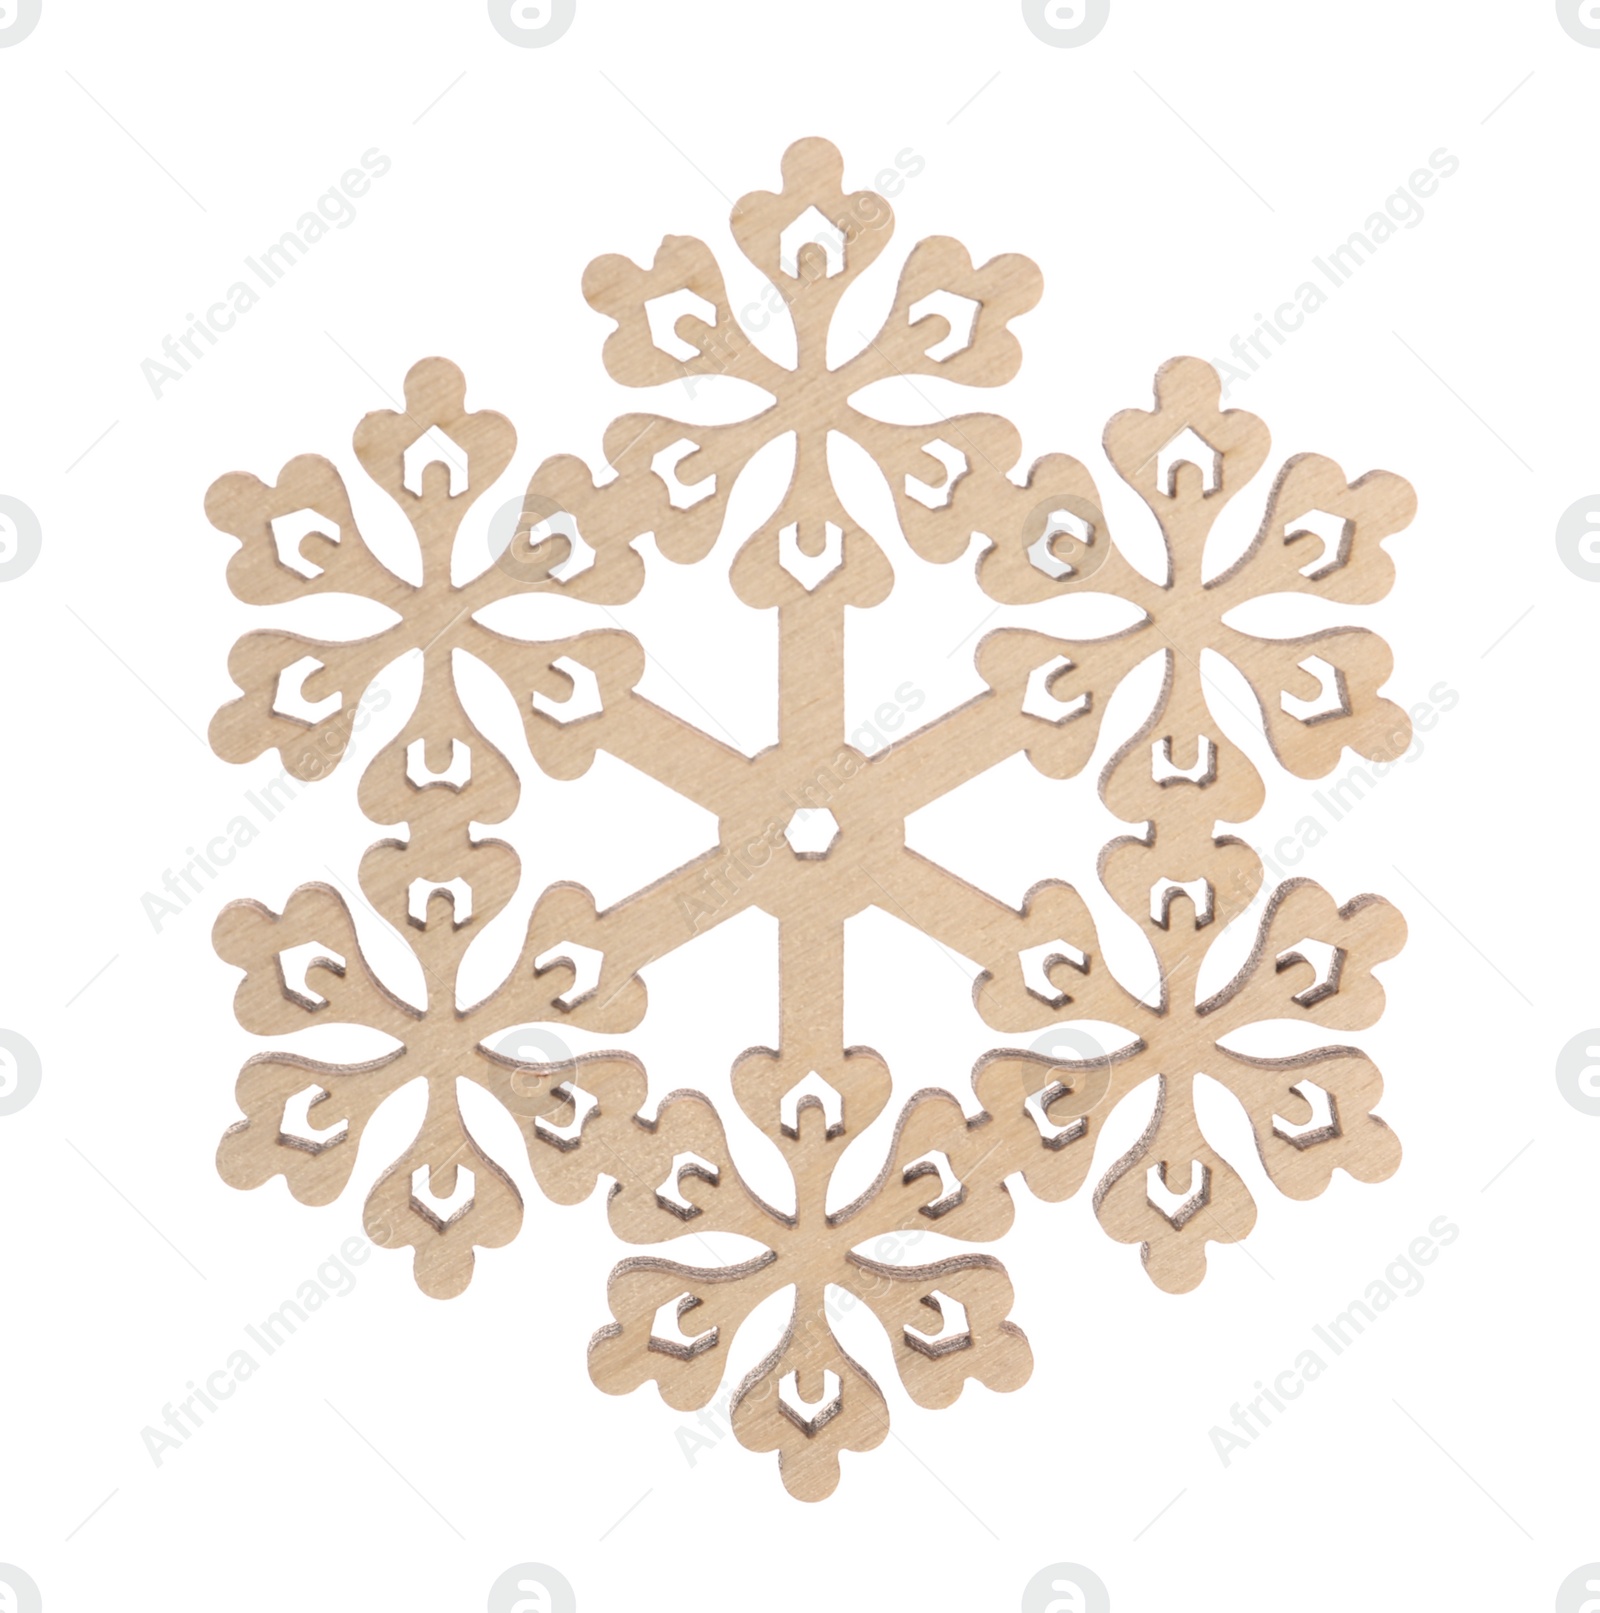 Photo of Beautiful decorative snowflake isolated on white. Christmas decoration